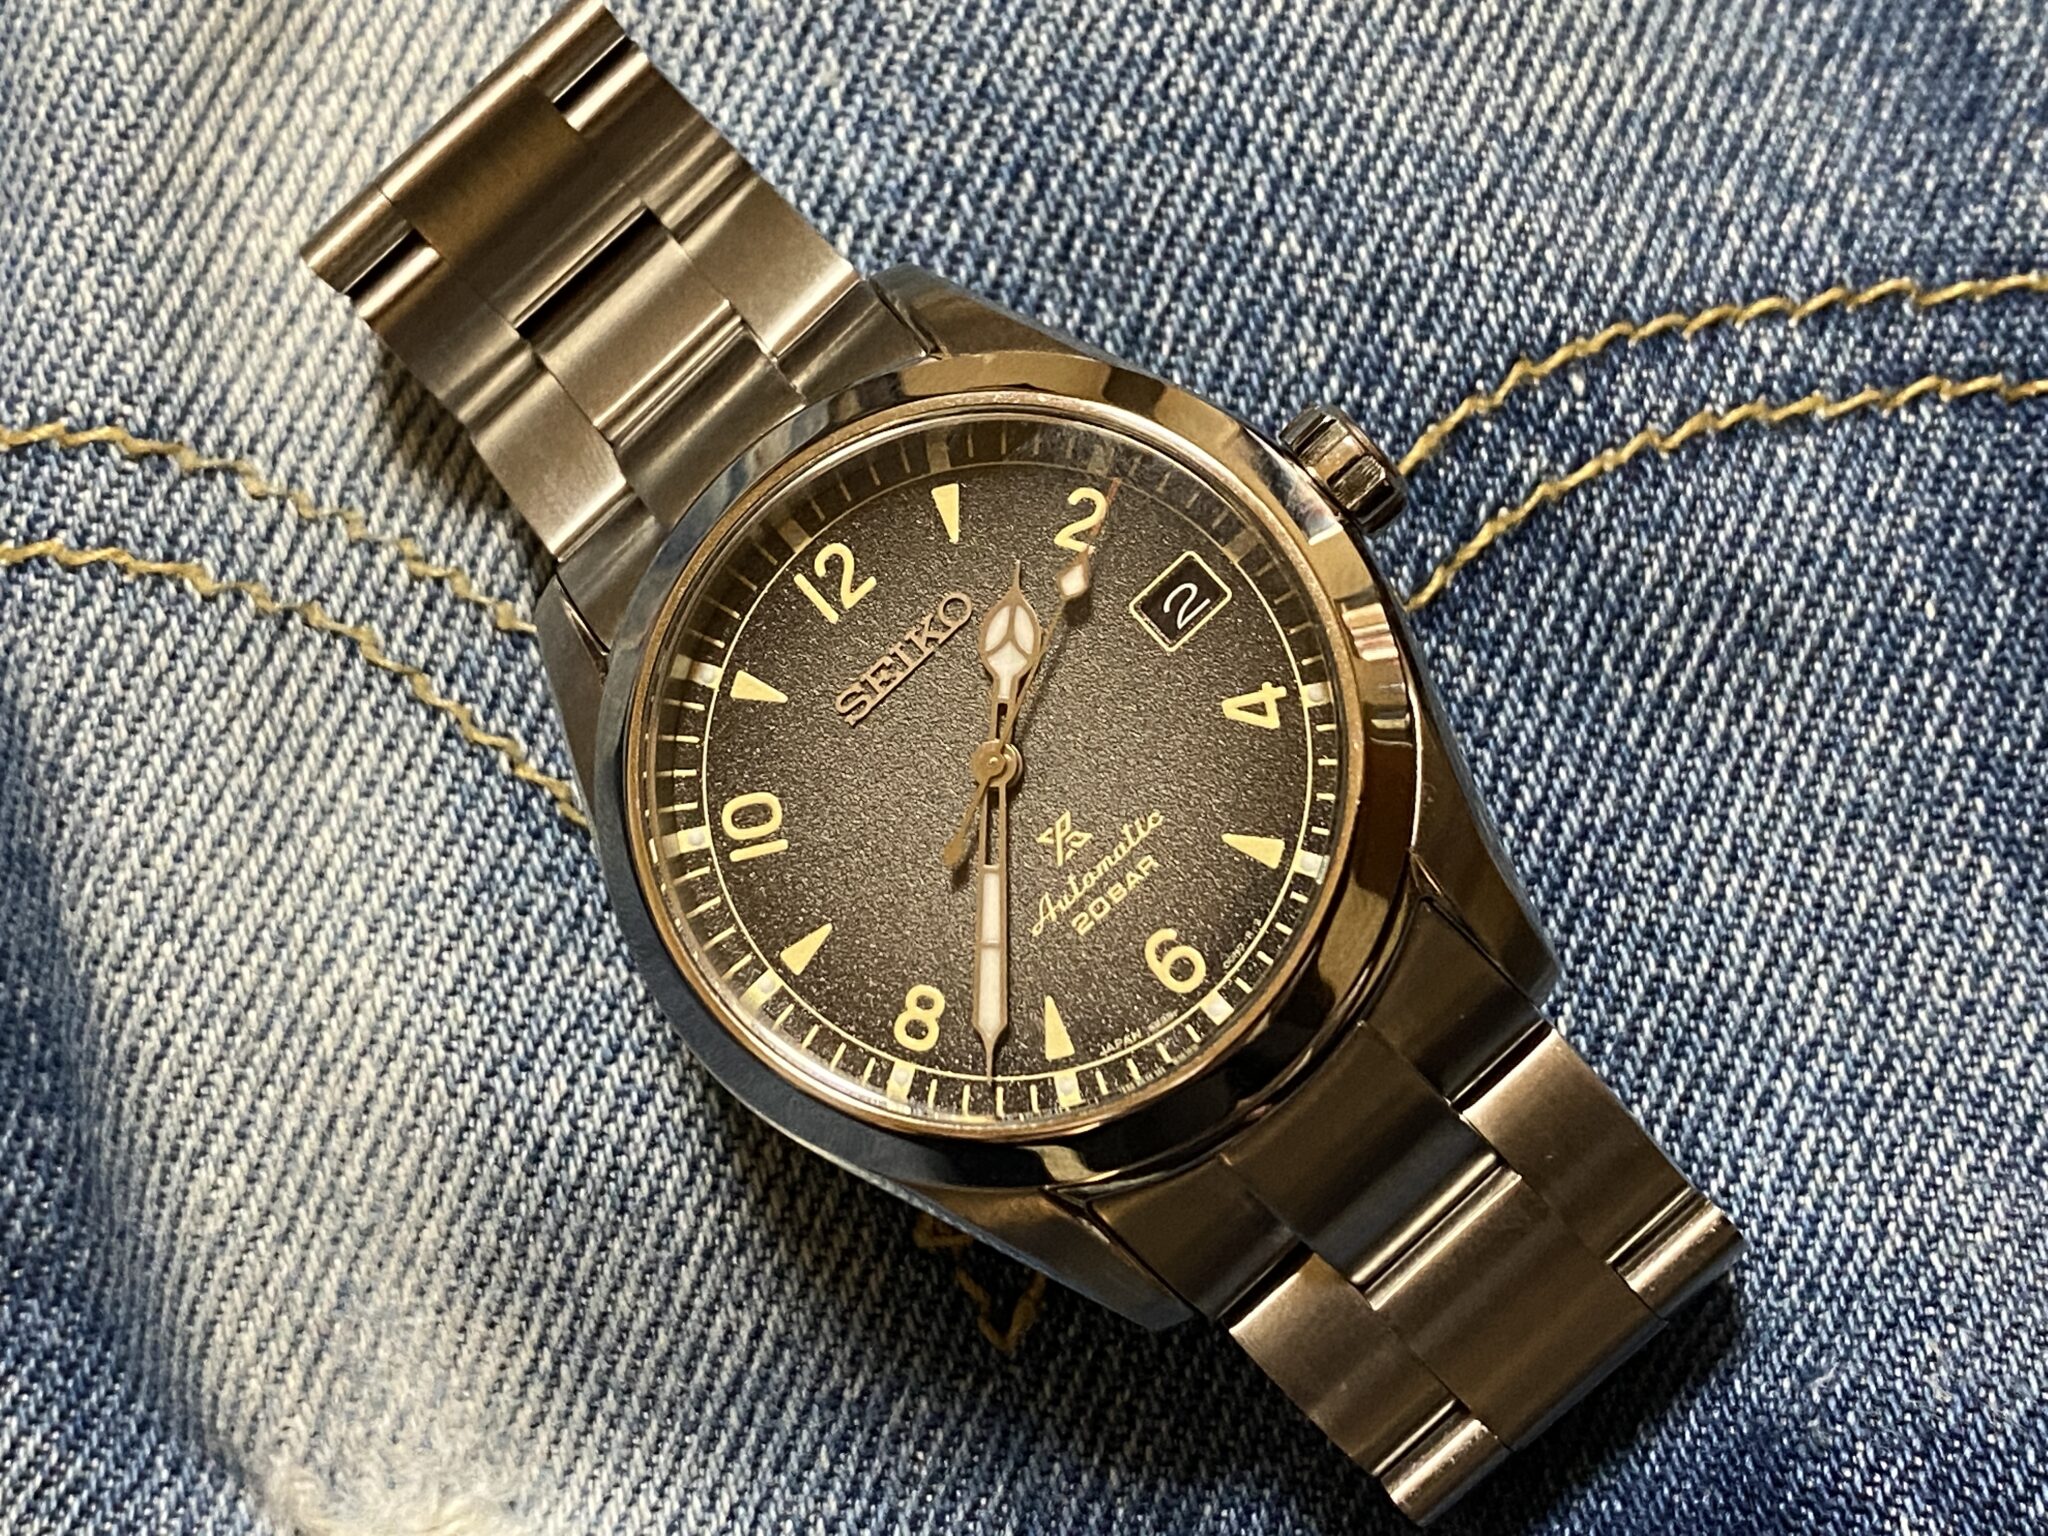 セイコー プロスペックス アルピニスト SBDC119 腕時計 メカニカル